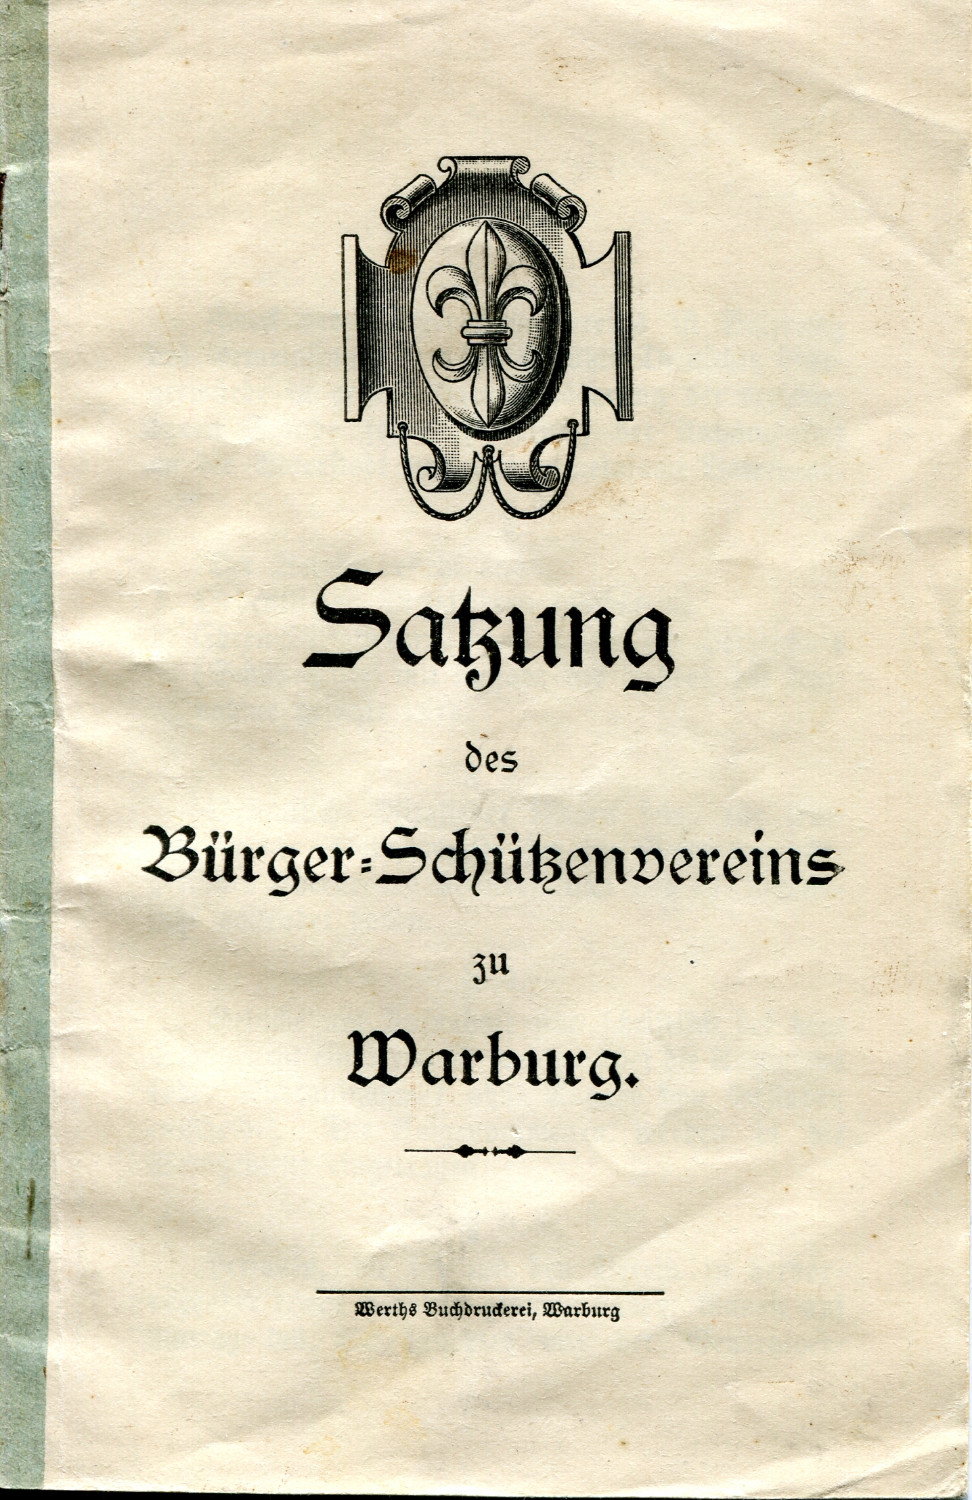 Satzung SV Warburg aus 1914002 1701